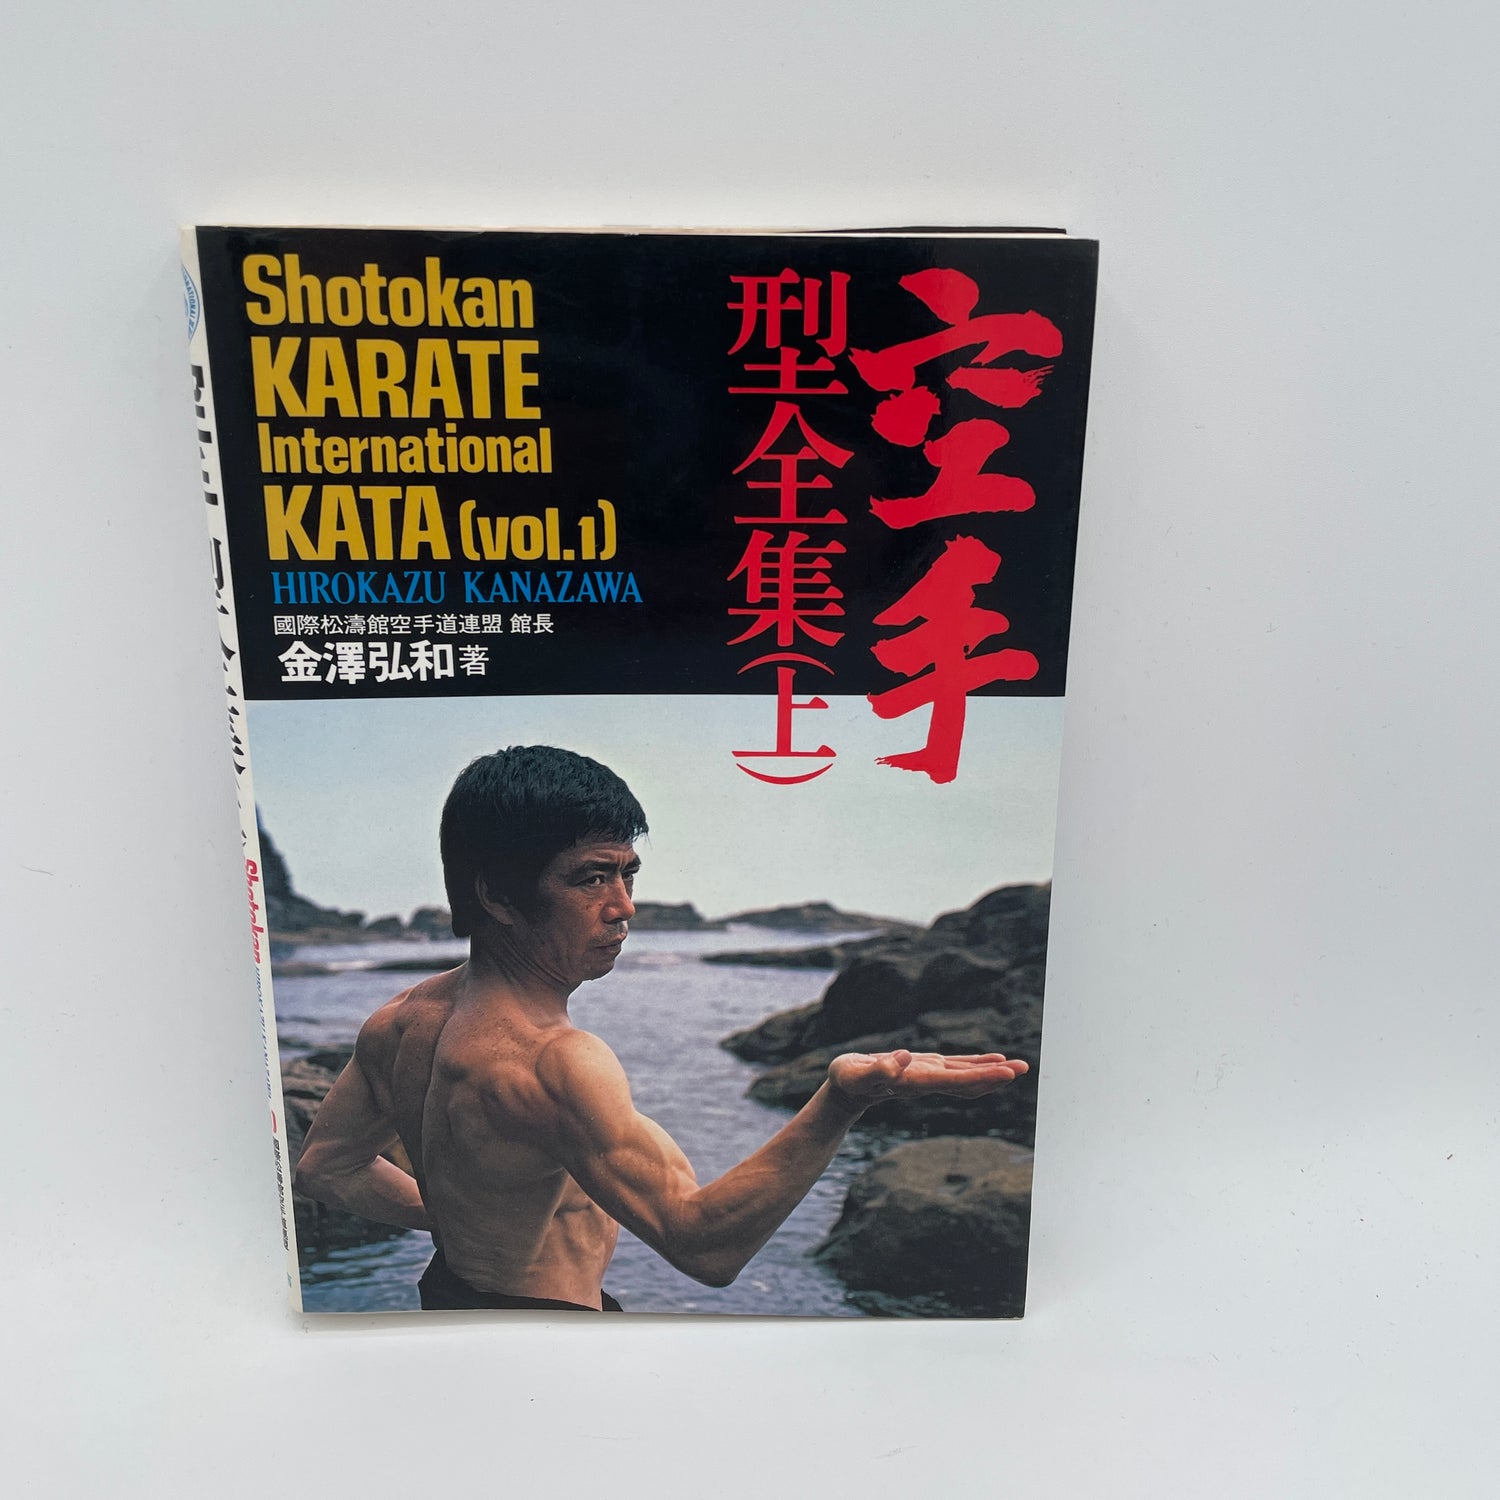 Shotokan Karate International Kata: Volumen 1 Libro de Hirokazu Kanazawa (Usado)